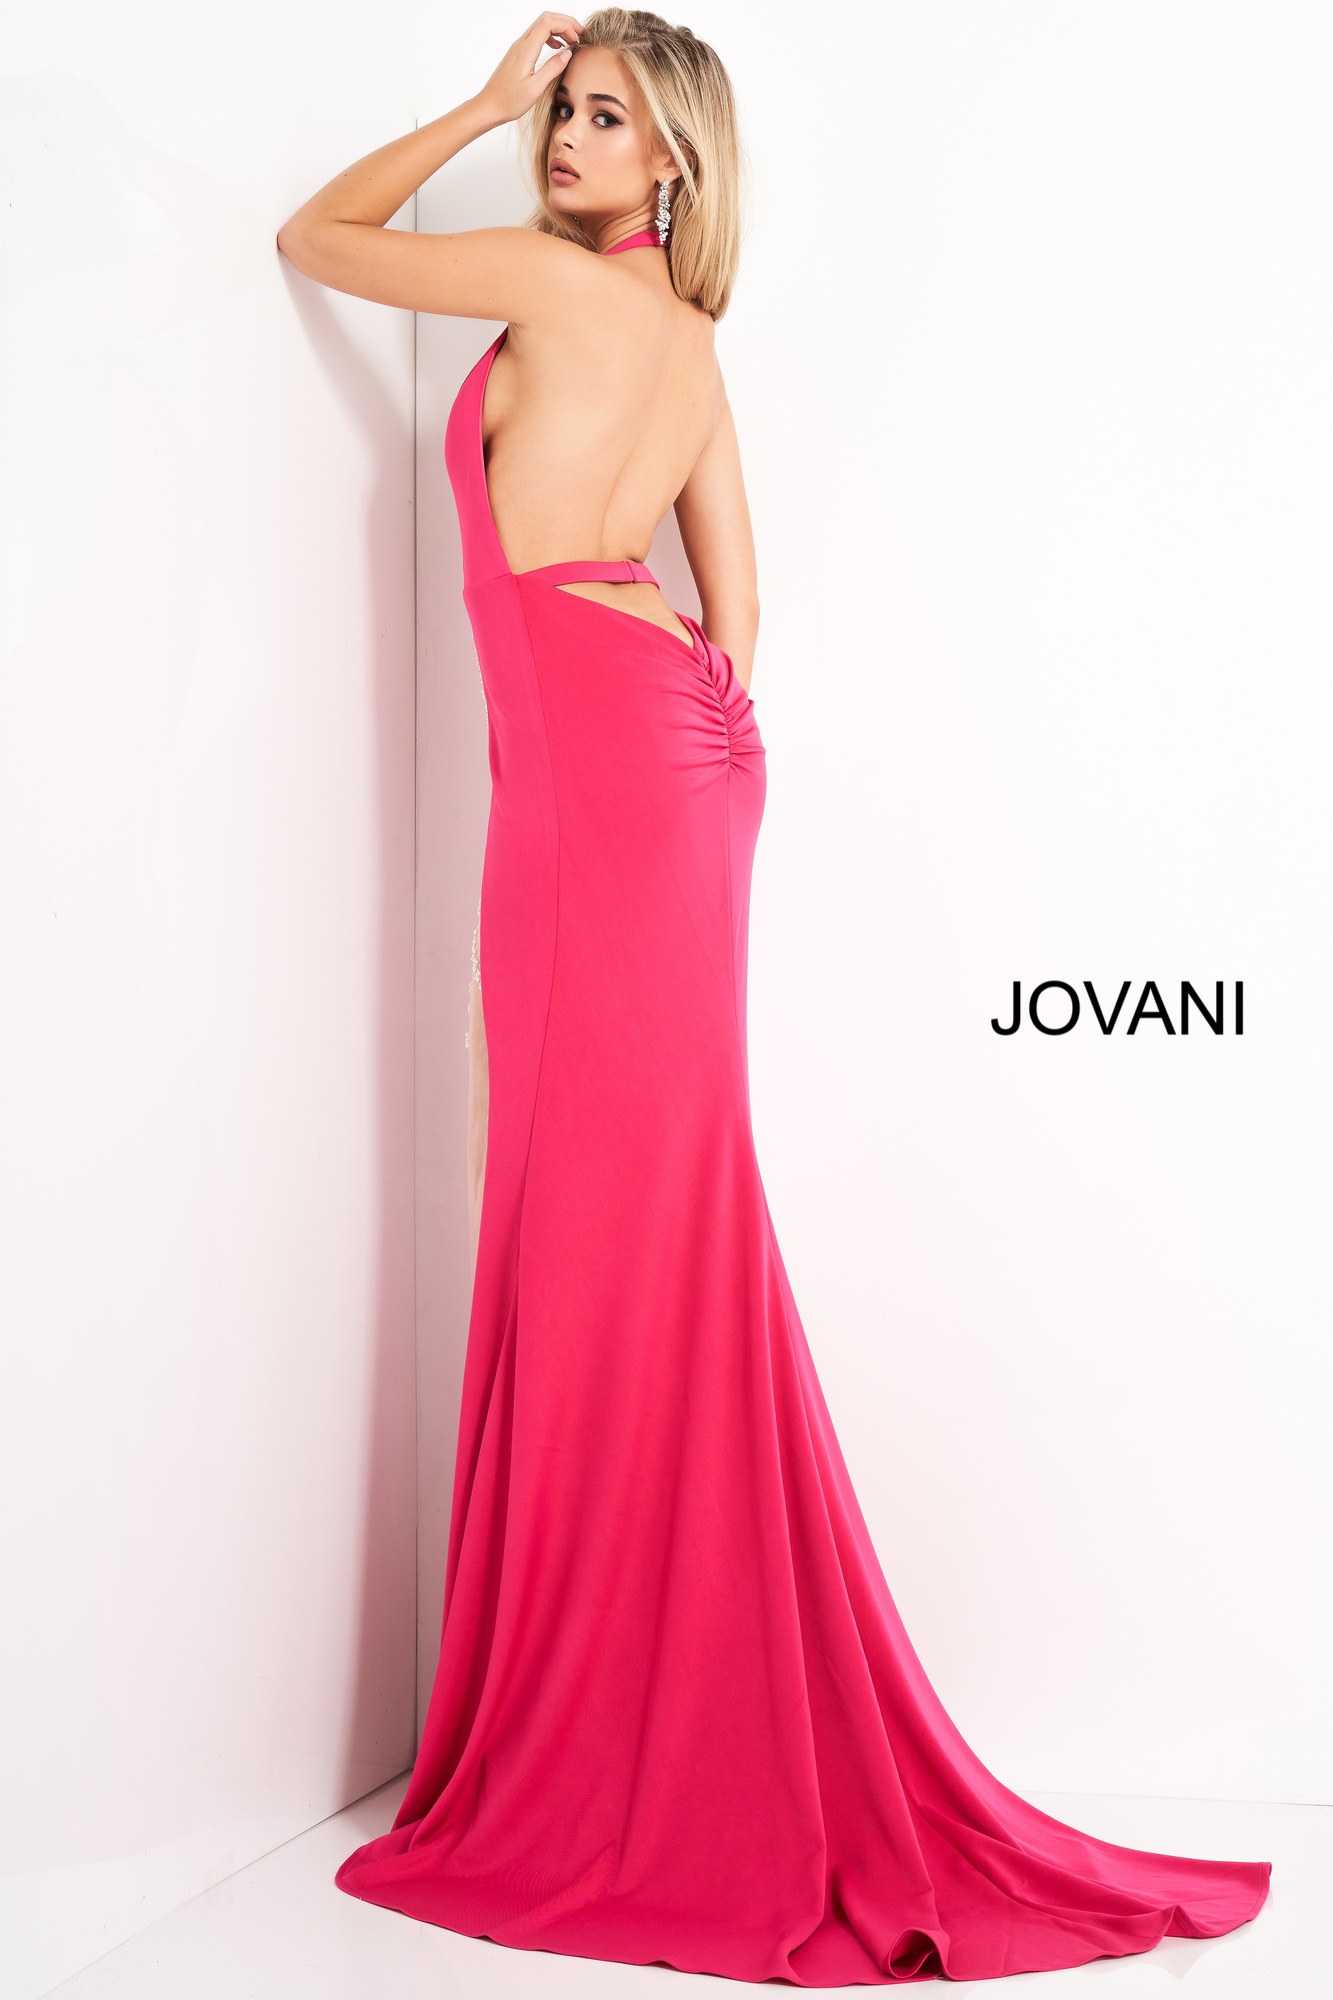 Jovani 02086 Hot Pink Halter Neck Backless Prom Dress